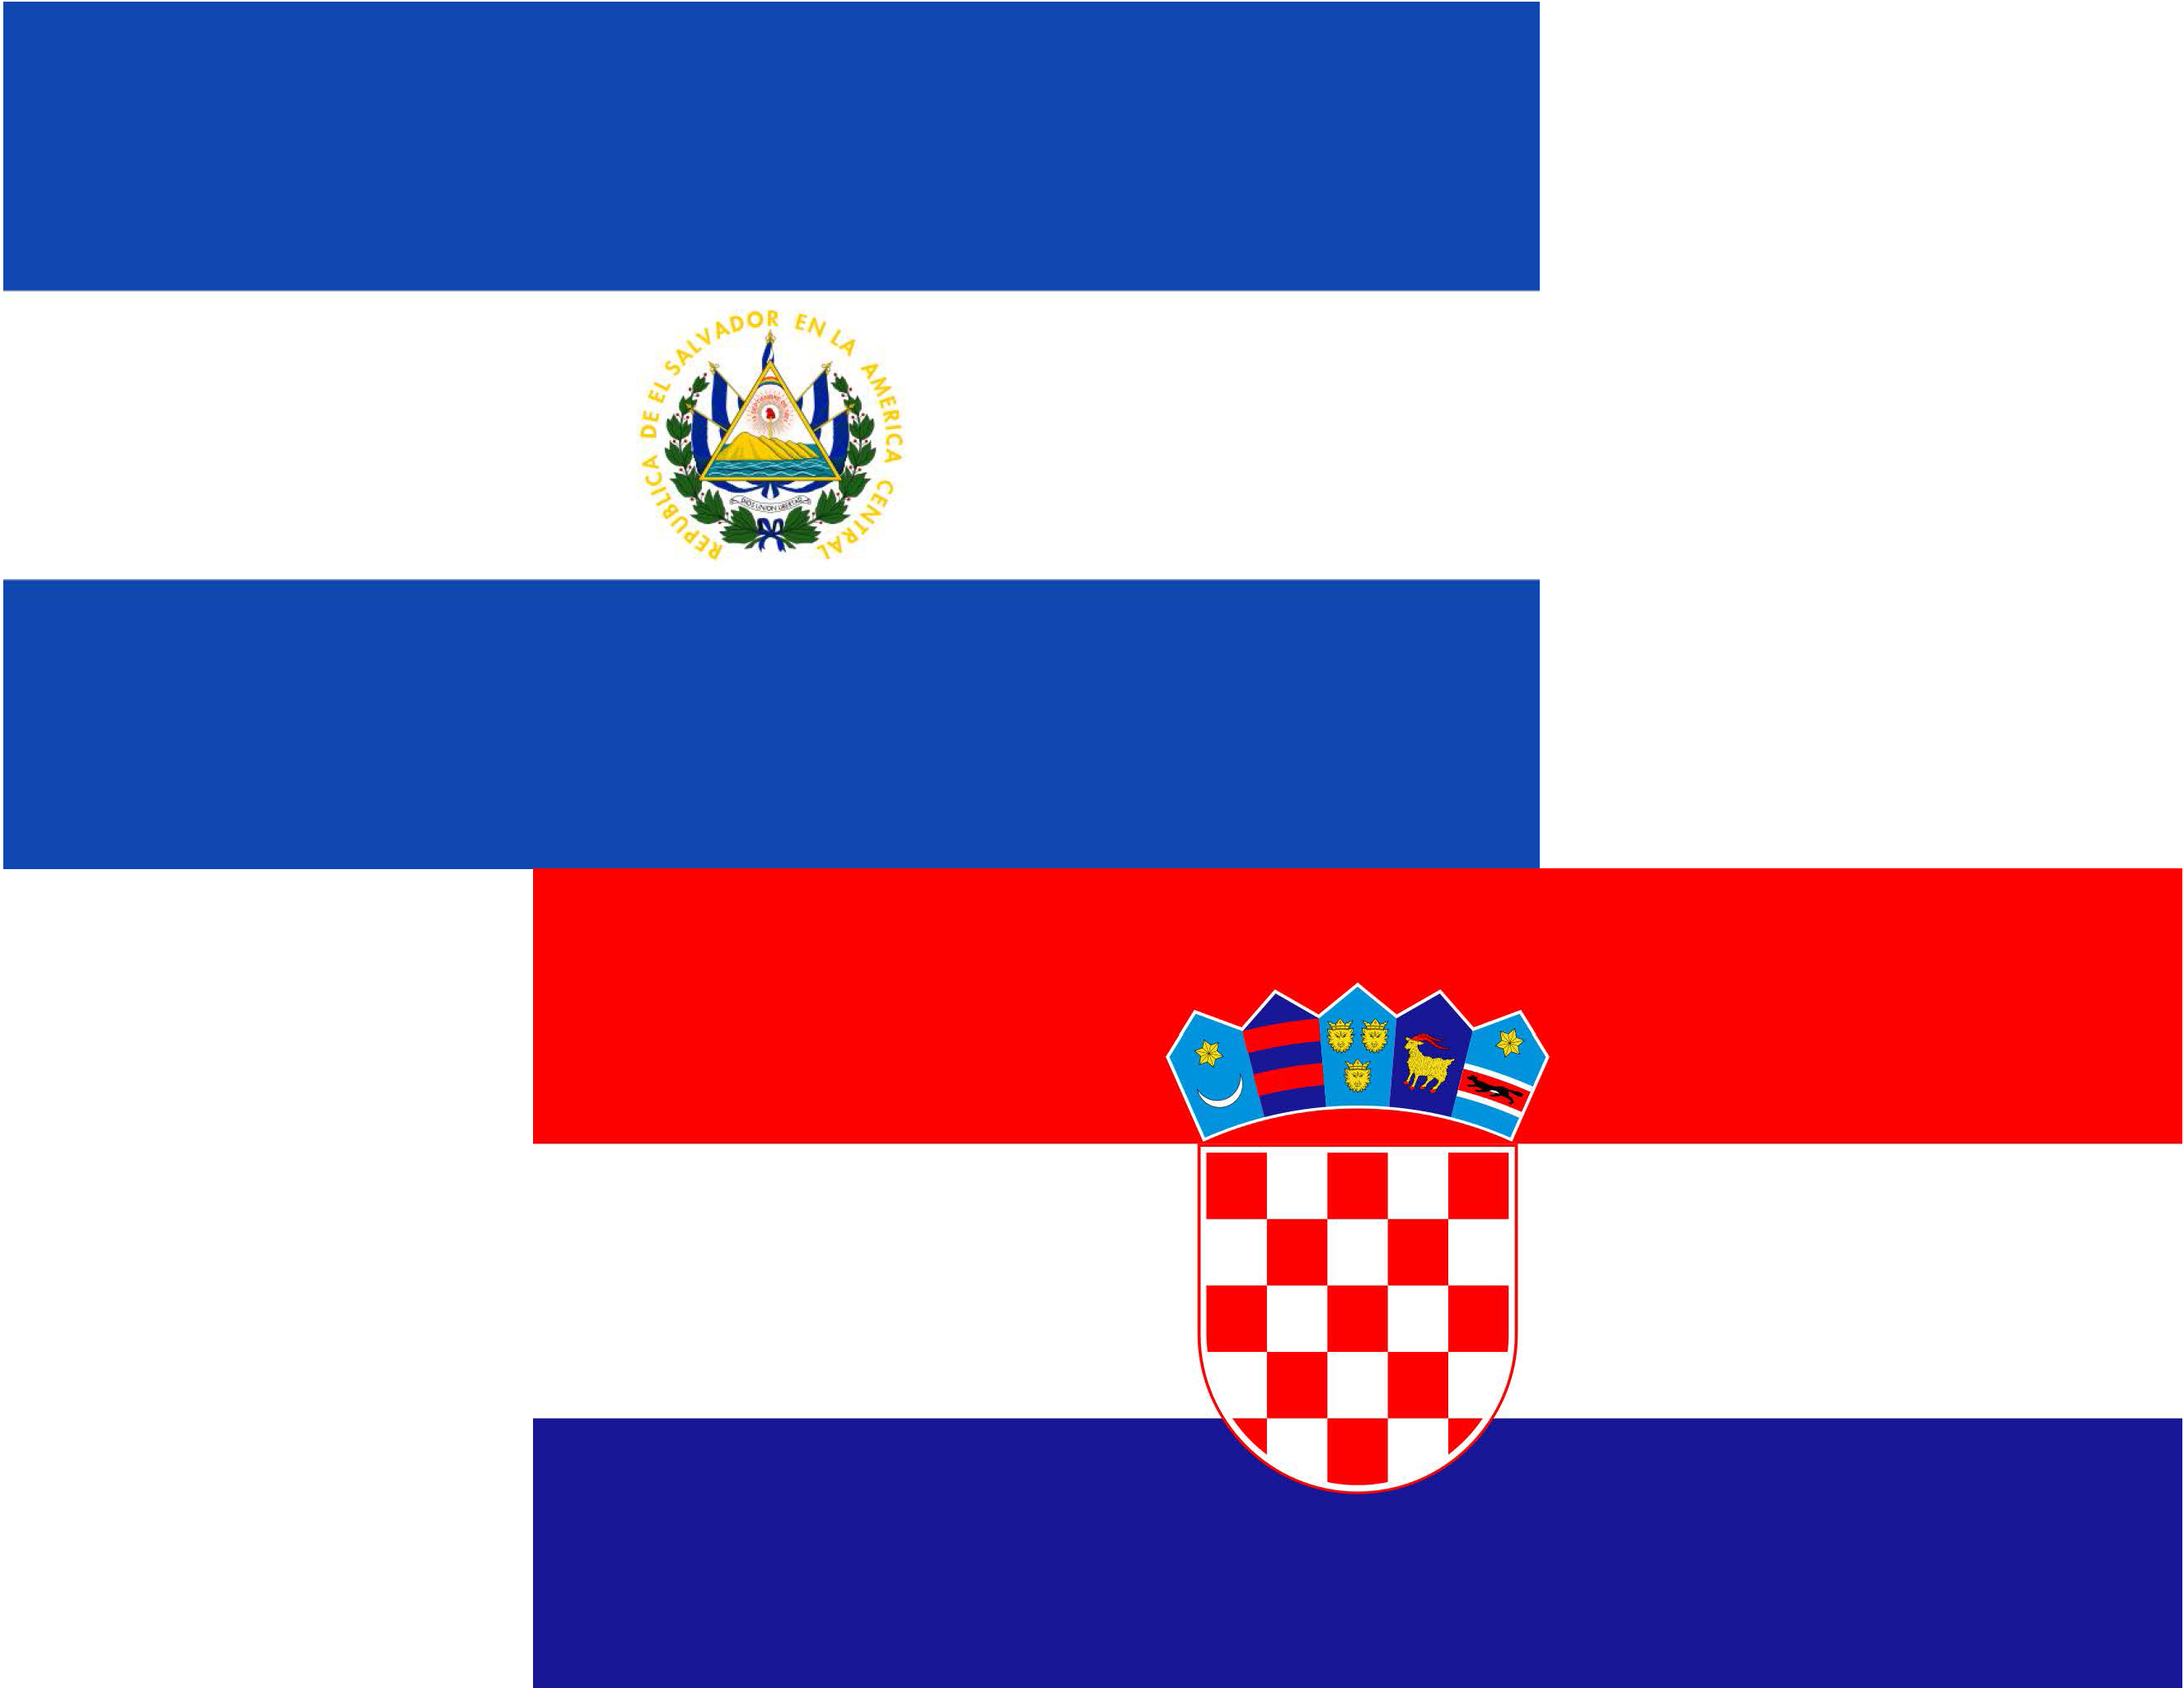 Argentina y Croacia futuras Partes en el Convenio de Minamata